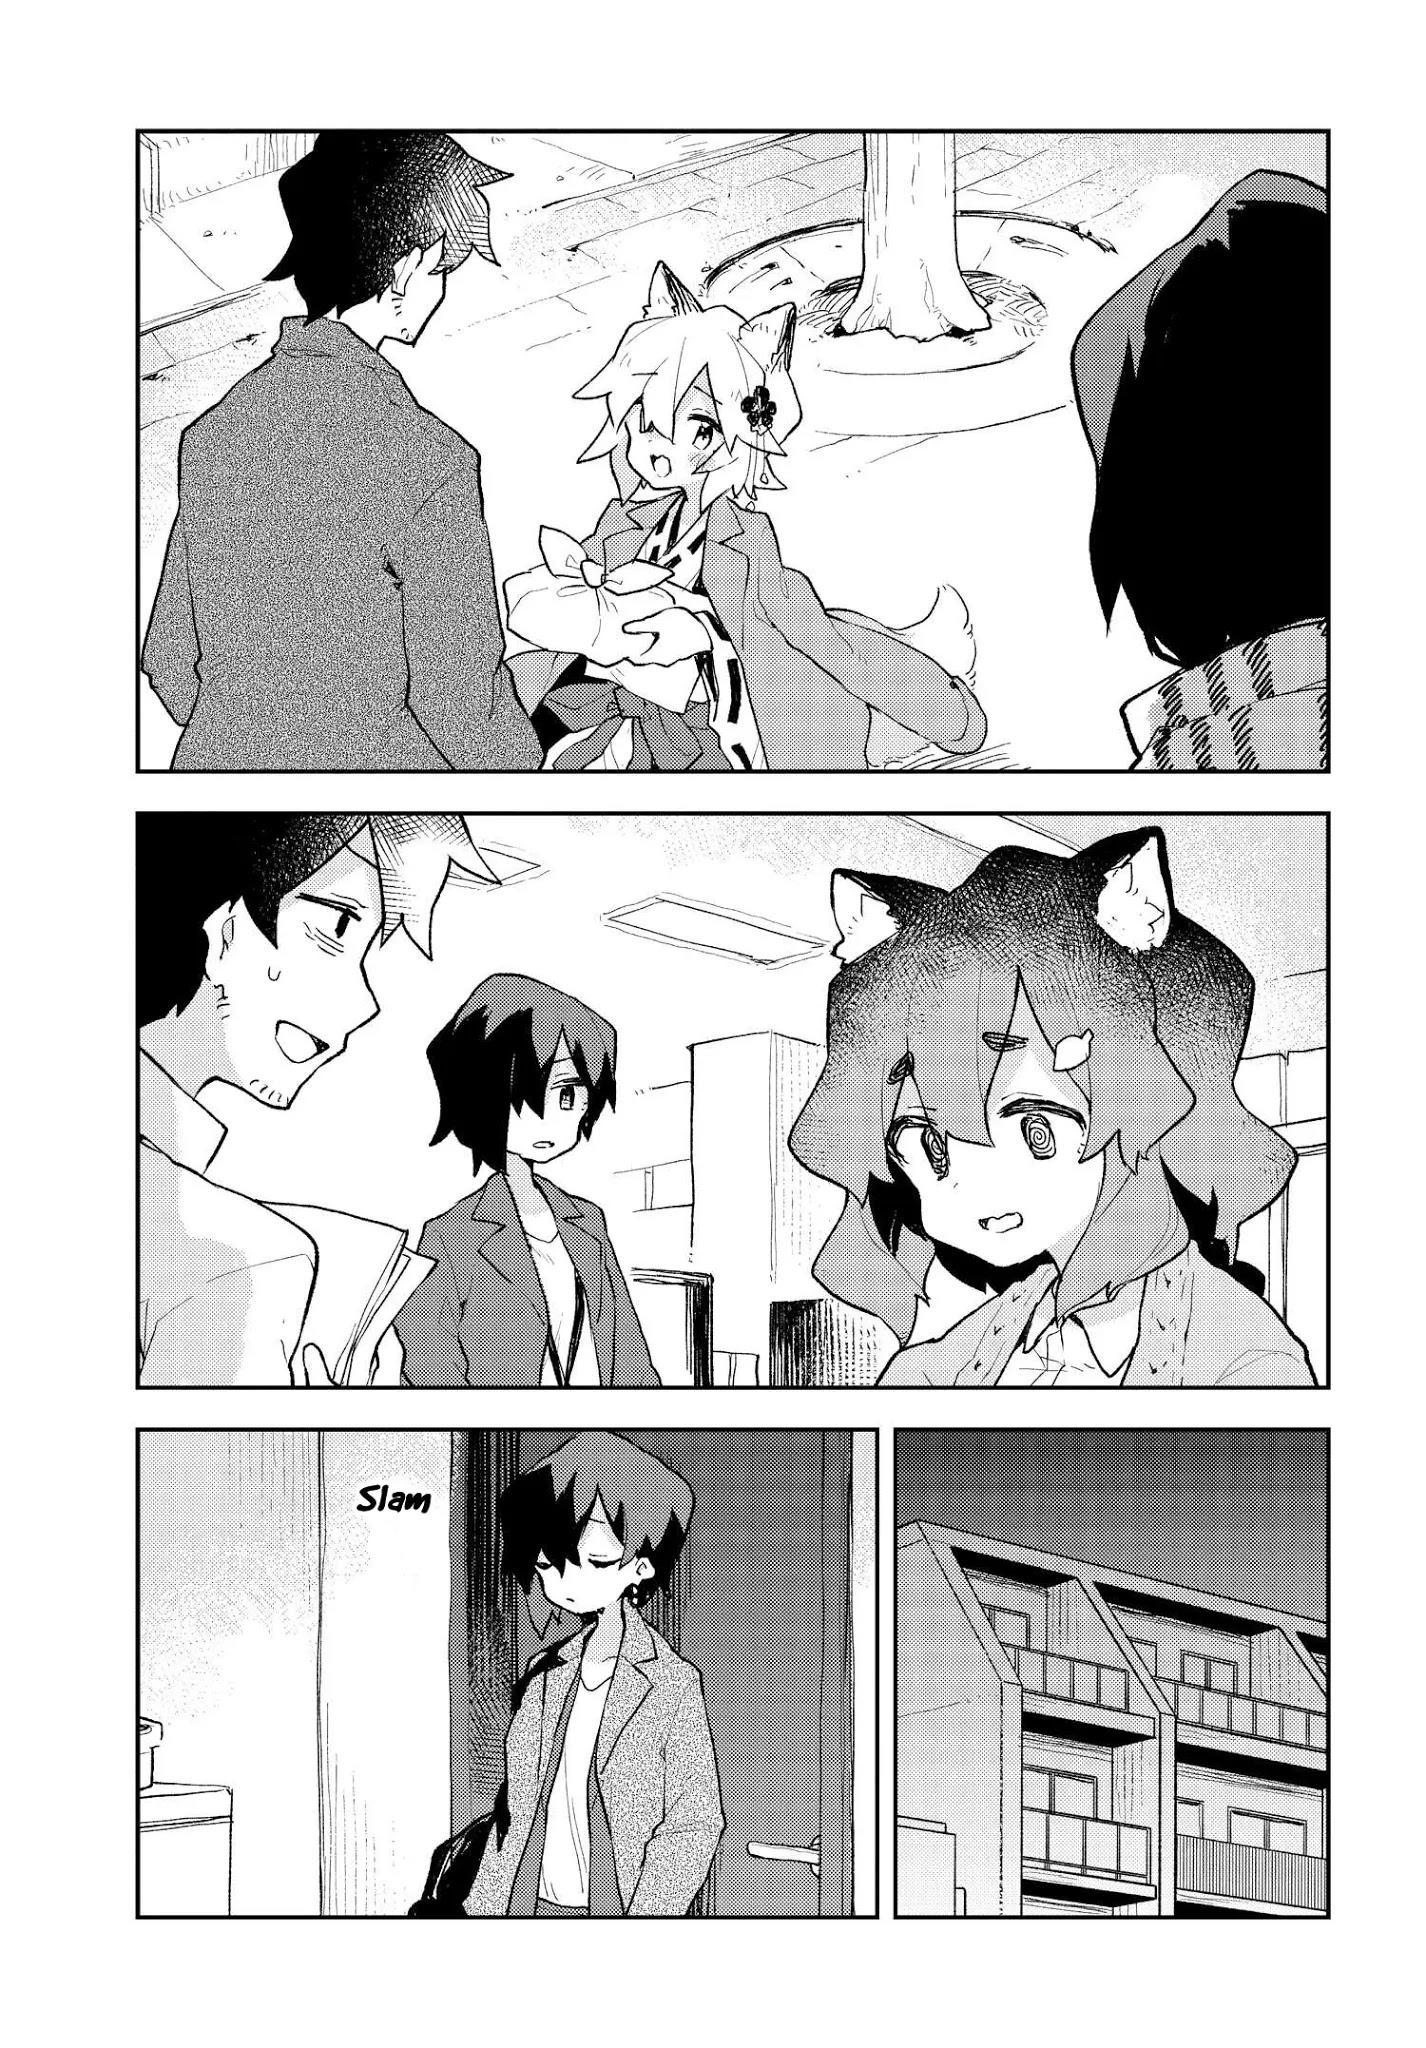 Sewayaki Kitsune No Senko-San Chapter 69.5 page 5 - Mangakakalot